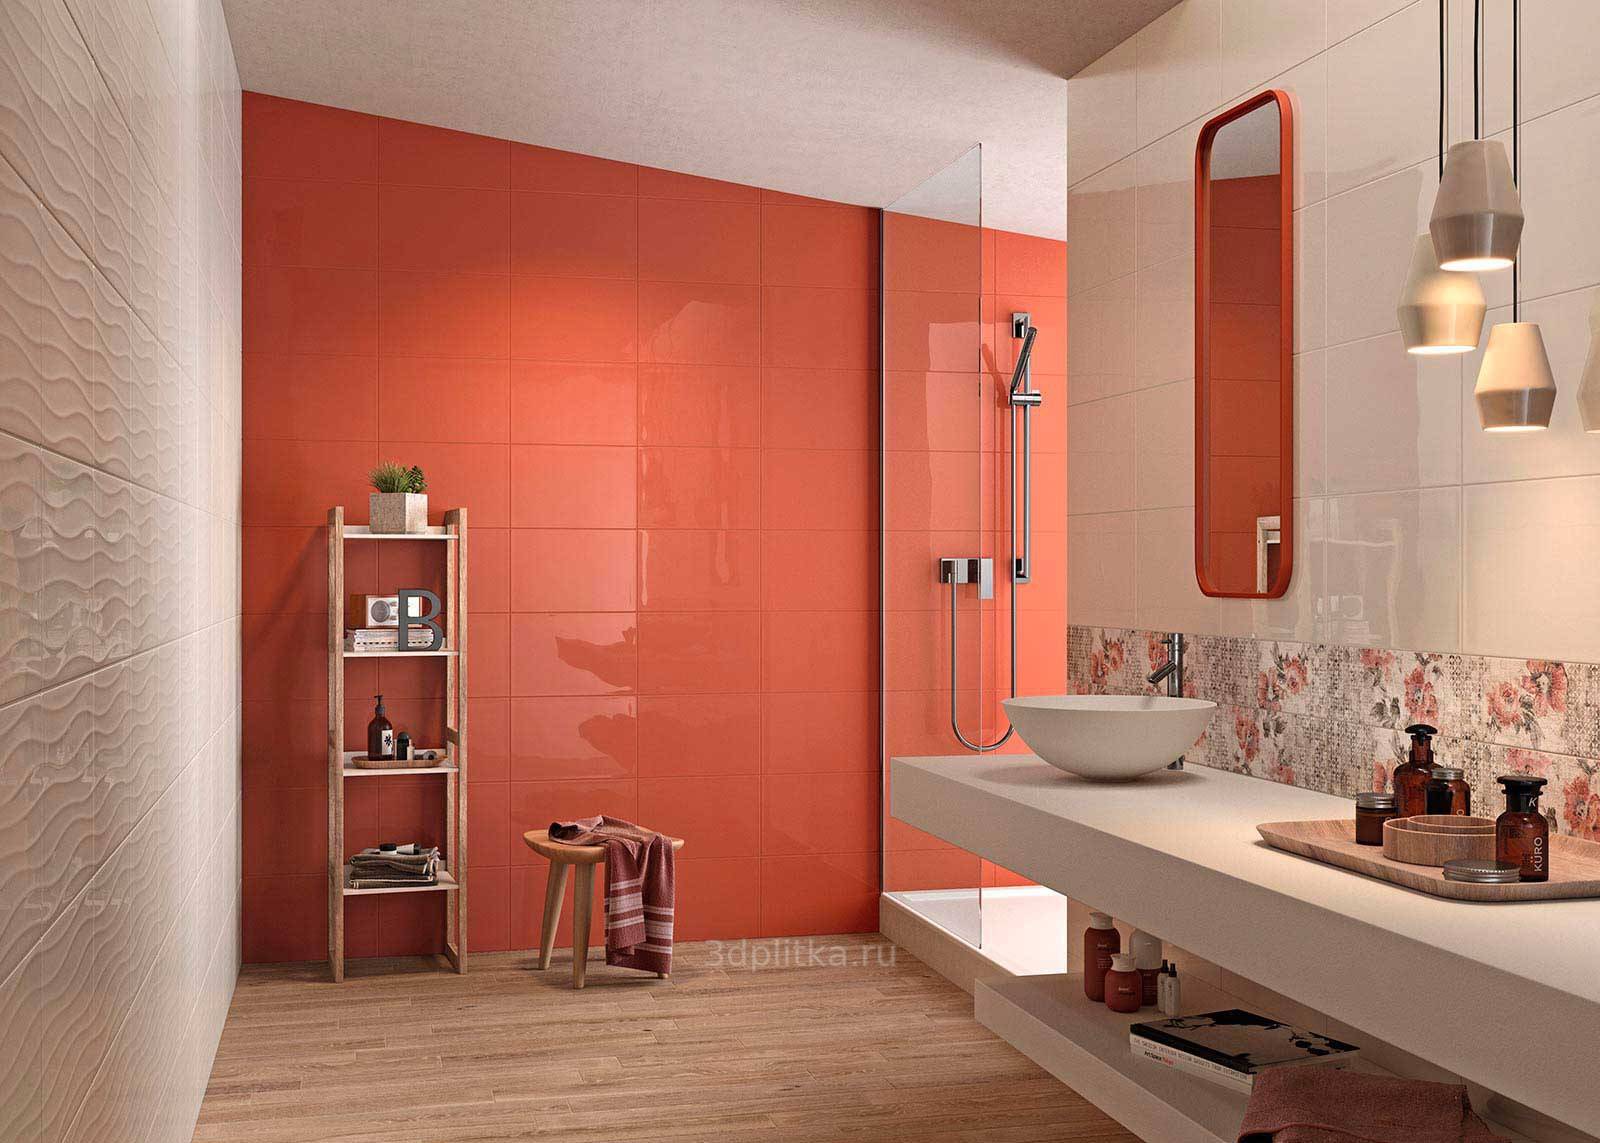 Плитка для ванной комнаты: плюсы и минусы материалов, цветовые решения. критерии выбора плитки, идеи оформления для стильного дизайна (160 фото)